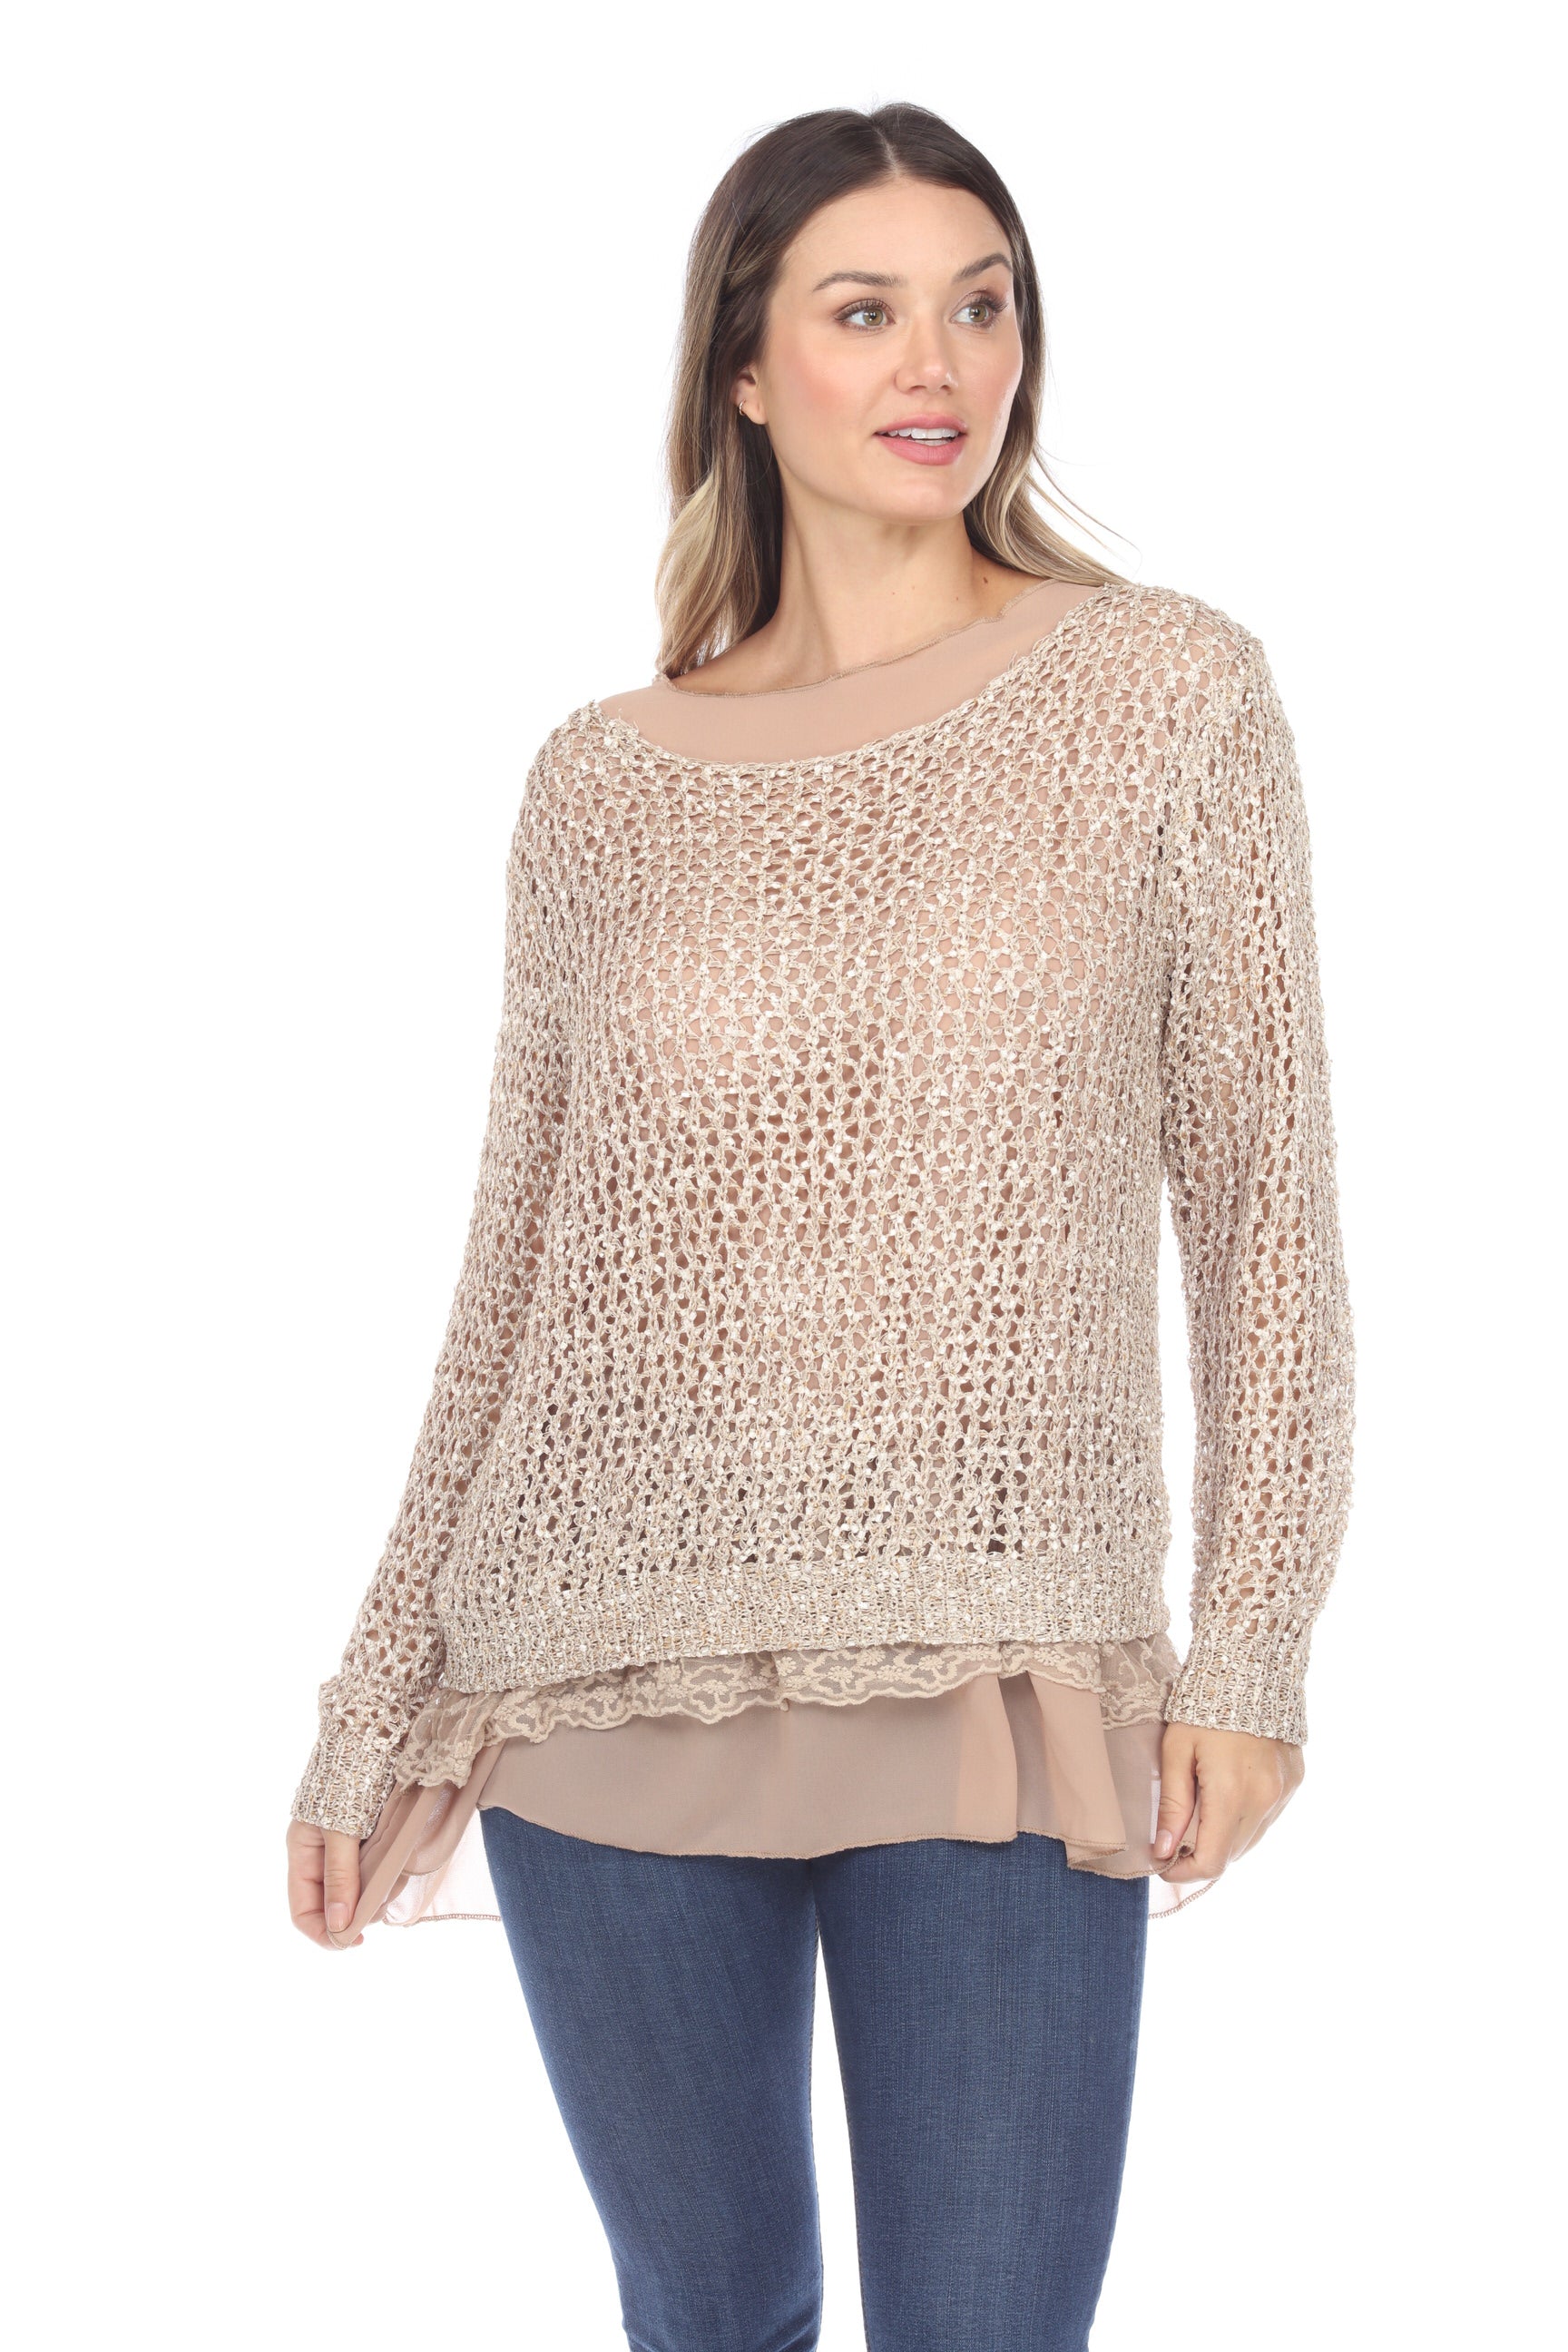 SIMPLY COUTURE Women's Plus Size Casual Khaki Crochet Net Lace Trim La ...